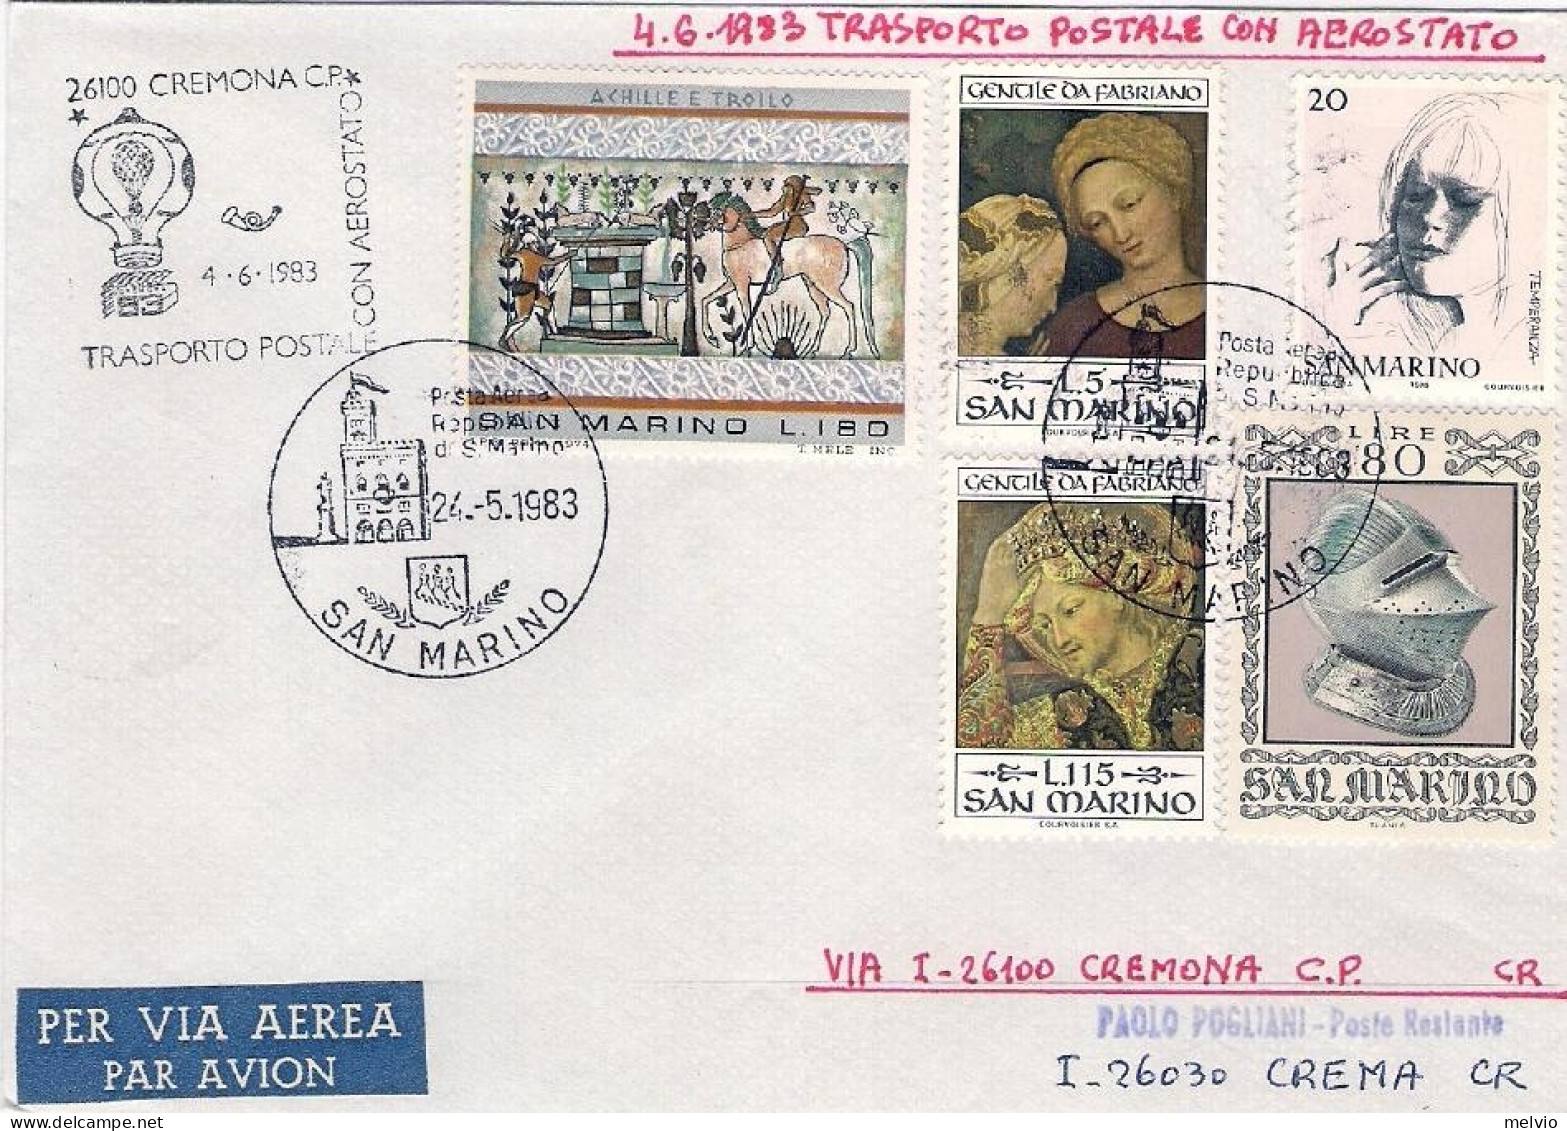 San Marino-1983 Trasporto Postale Con Aerostato Cremona Crema Del 4 Giugno + Eri - Luftpost